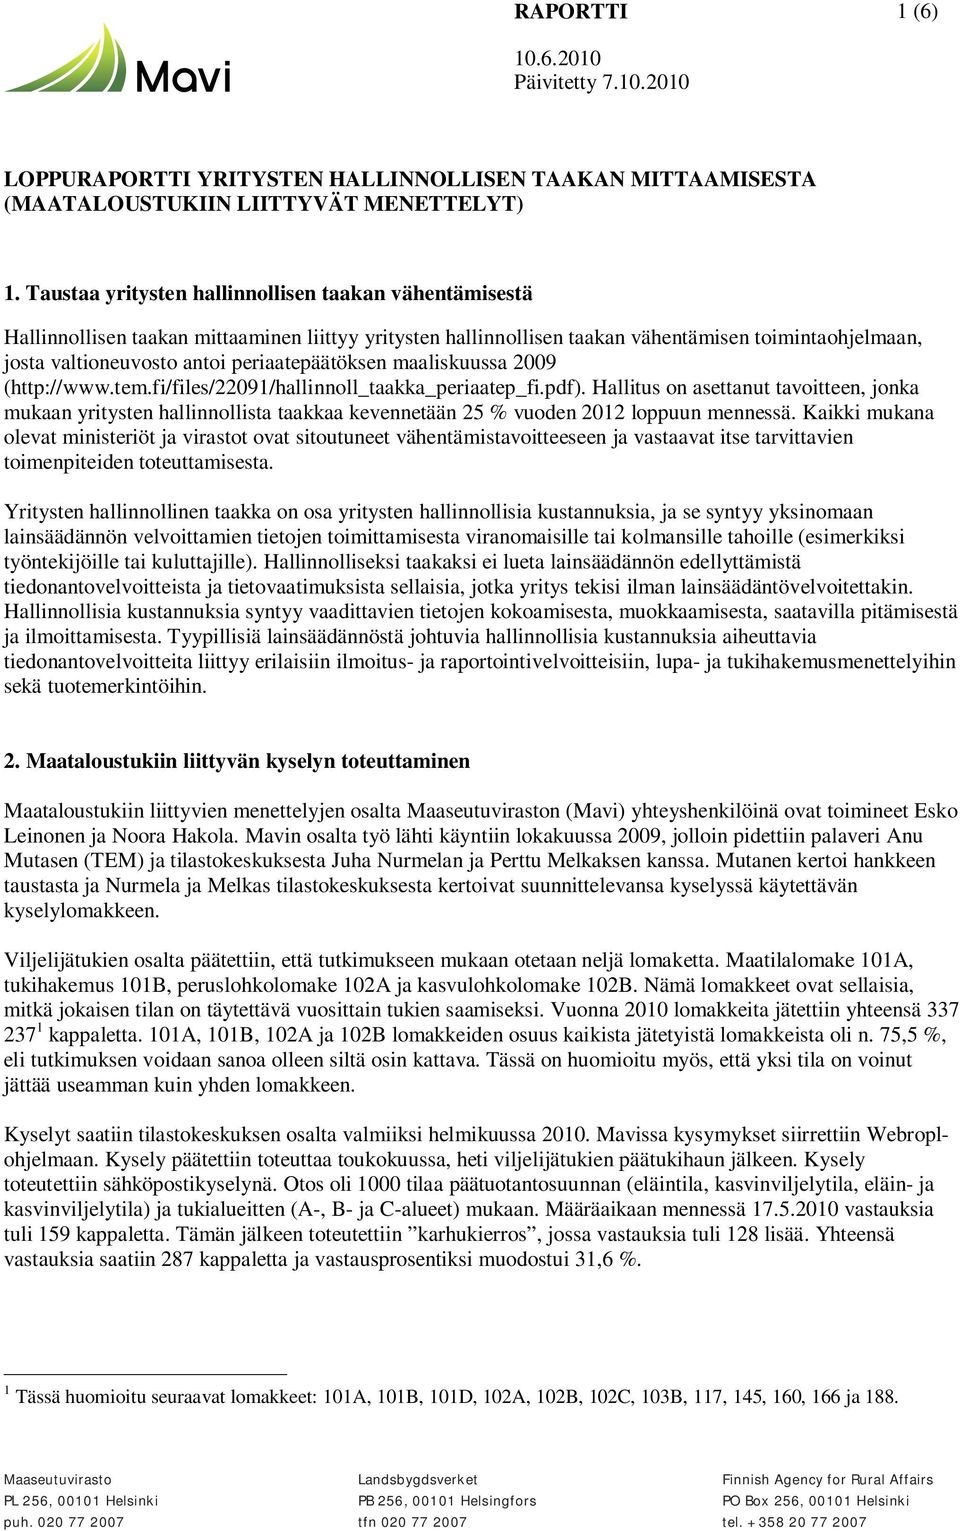 periaatepäätöksen maaliskuussa 2009 (http://www.tem.fi/files/22091/hallinnoll_taakka_periaatep_fi.pdf).